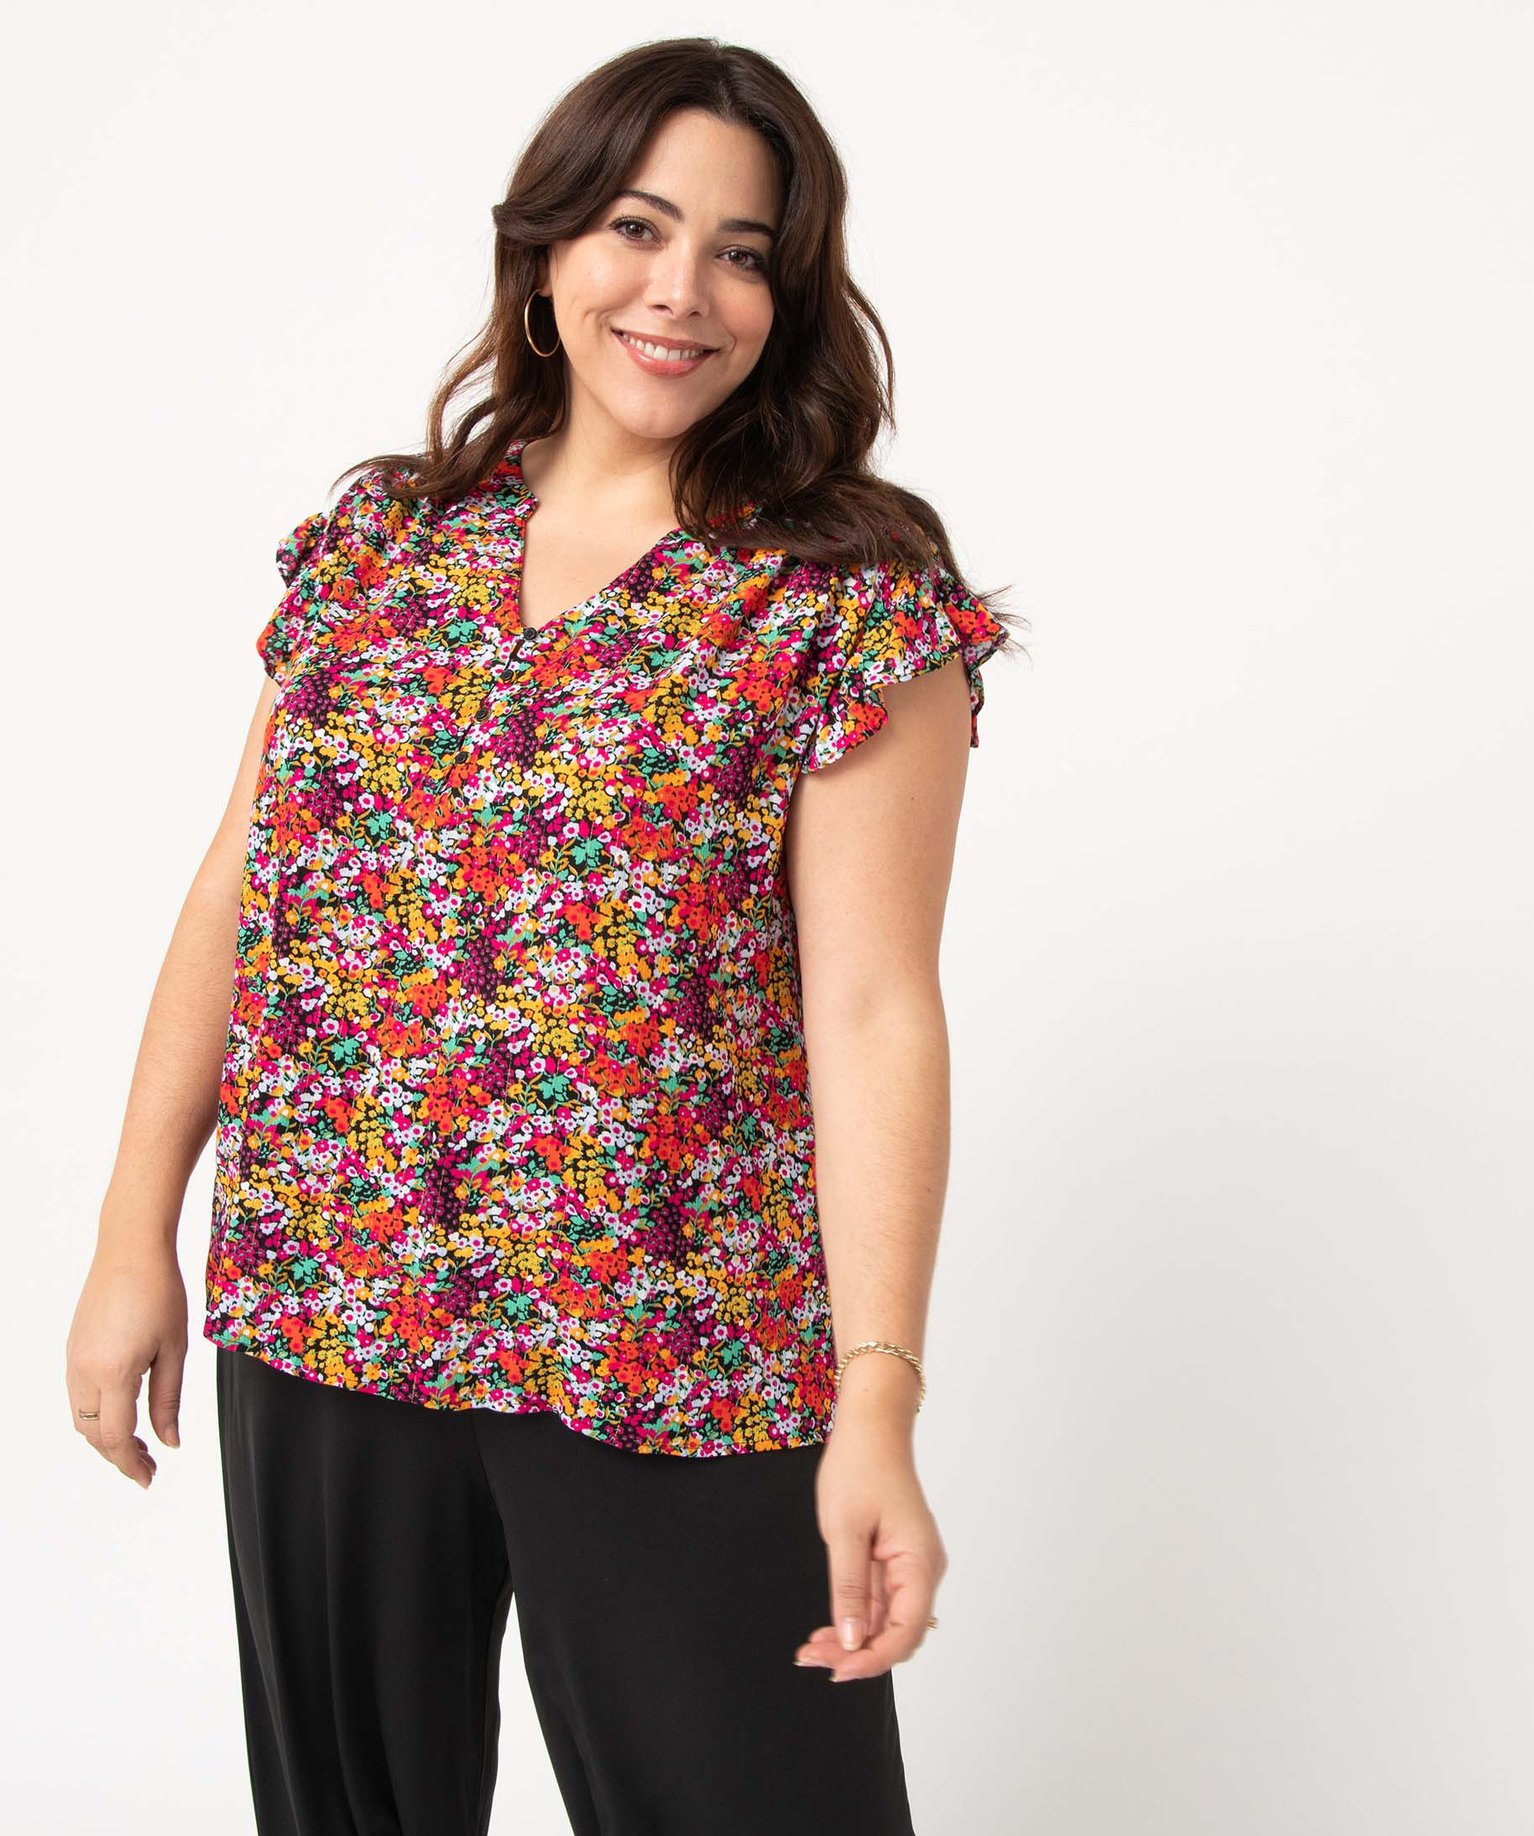 blouse femme grande taille a motifs fleuris et rayures pailletees multicolore chemisiers et blouses